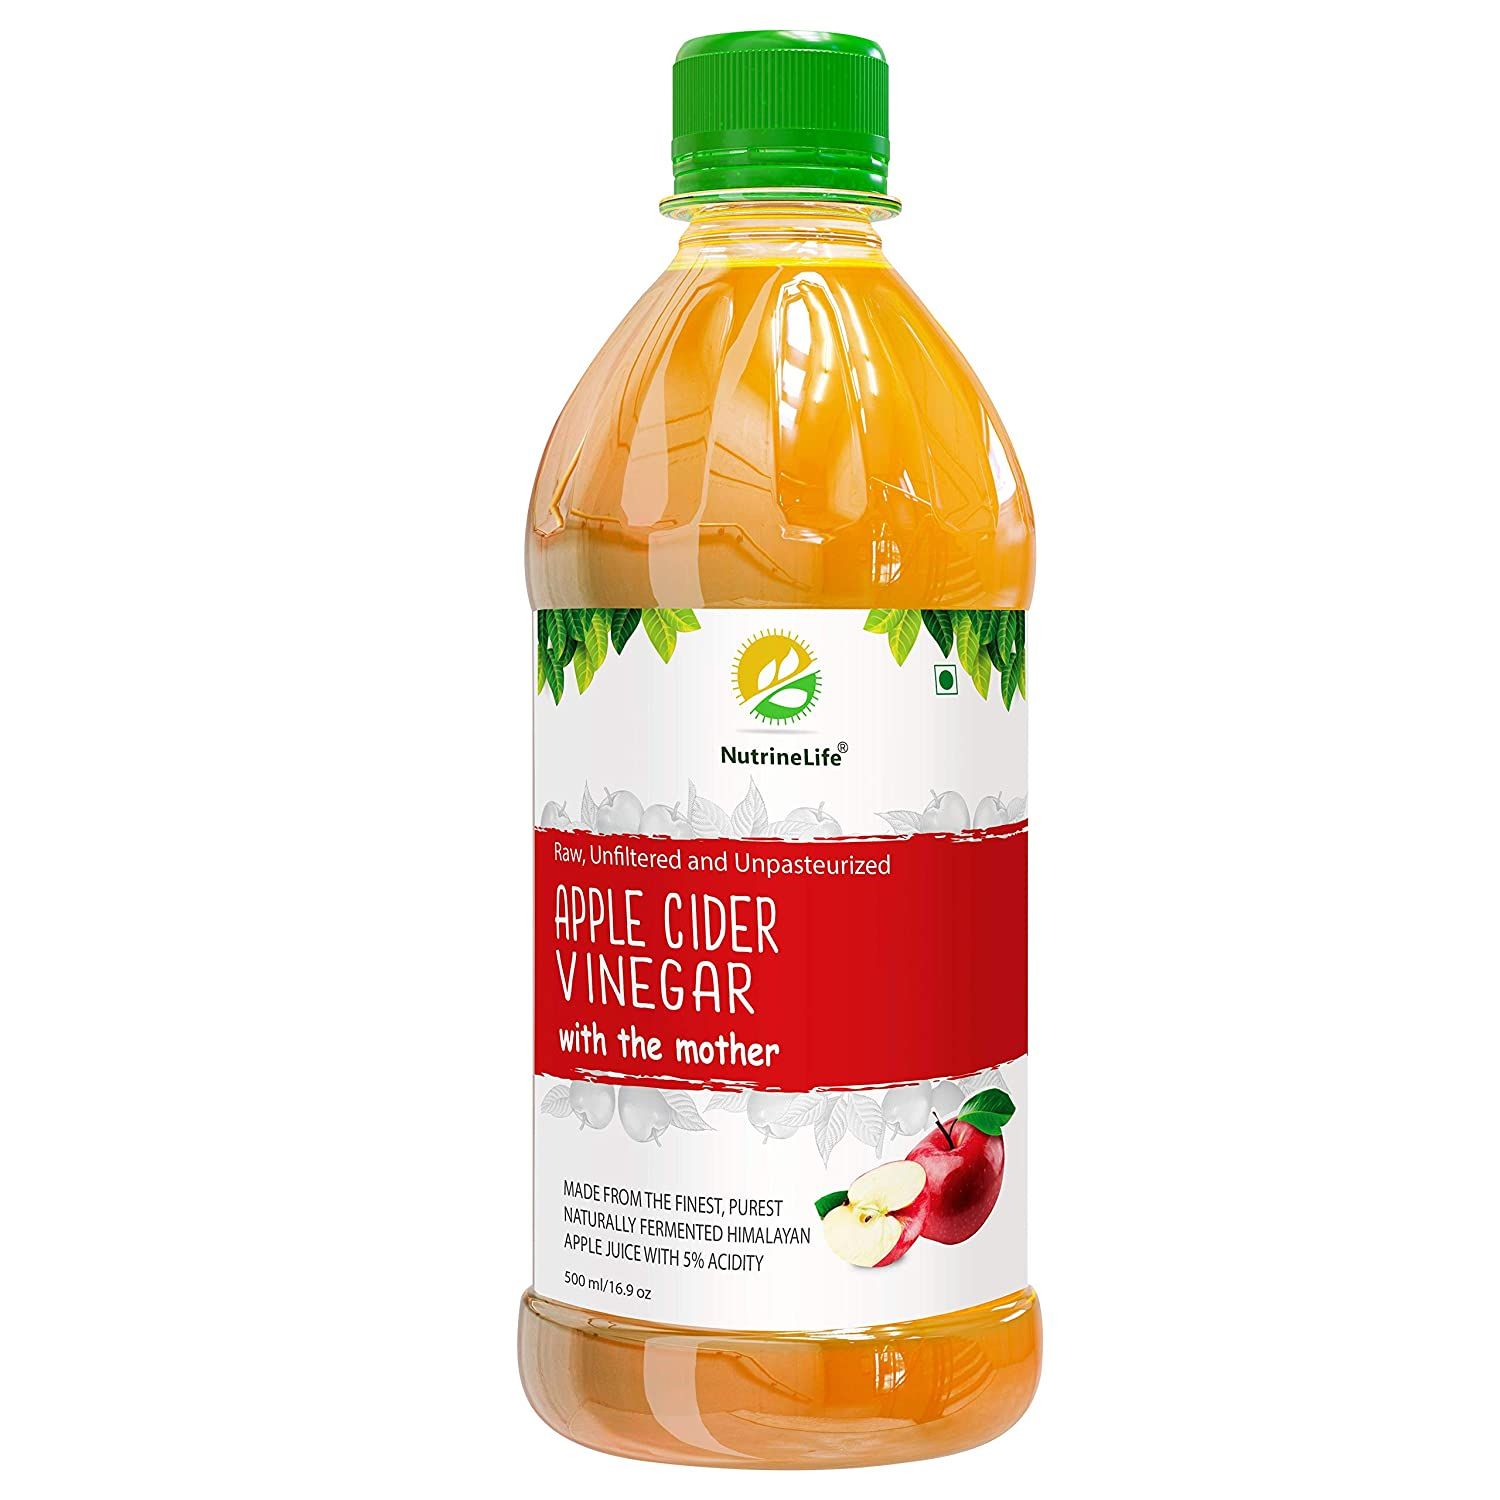 Nutrinelife Apple Cider Vinegar Image